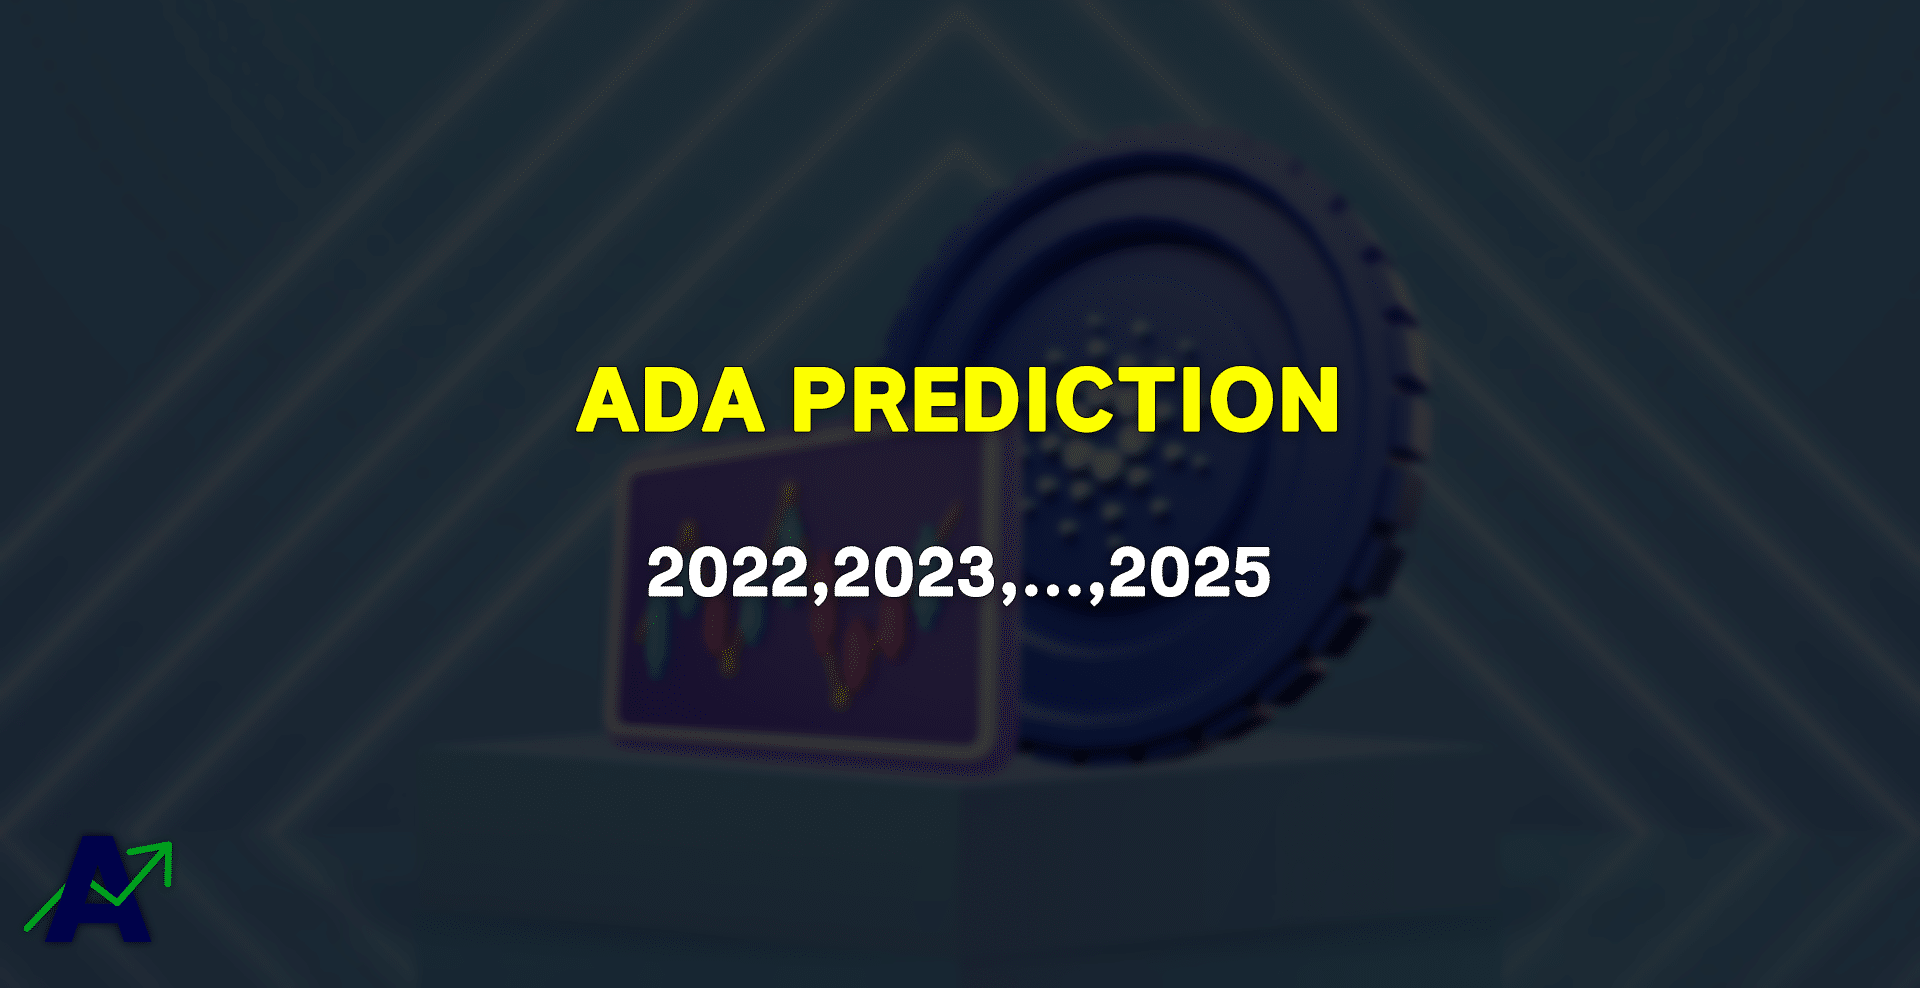 Cardano Price Prediction 2022 till 2025